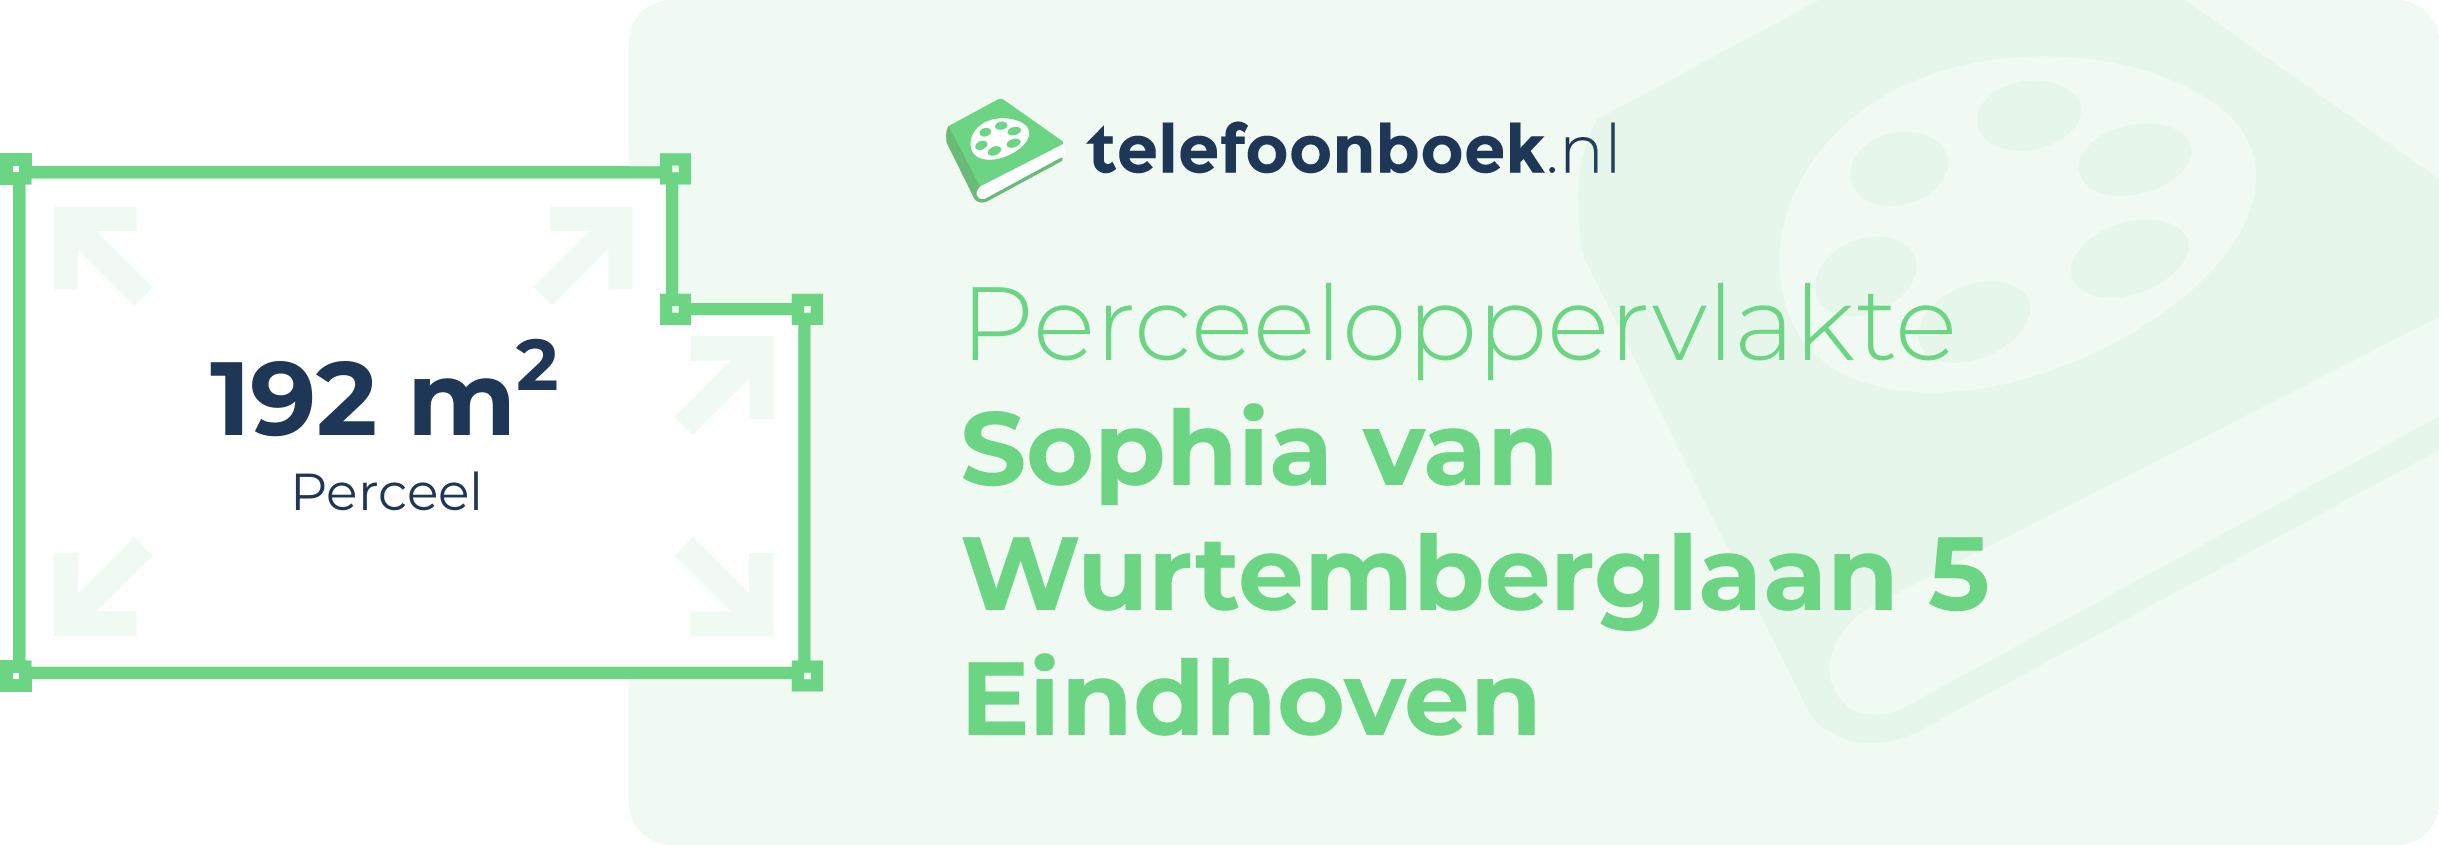 Perceeloppervlakte Sophia Van Wurtemberglaan 5 Eindhoven